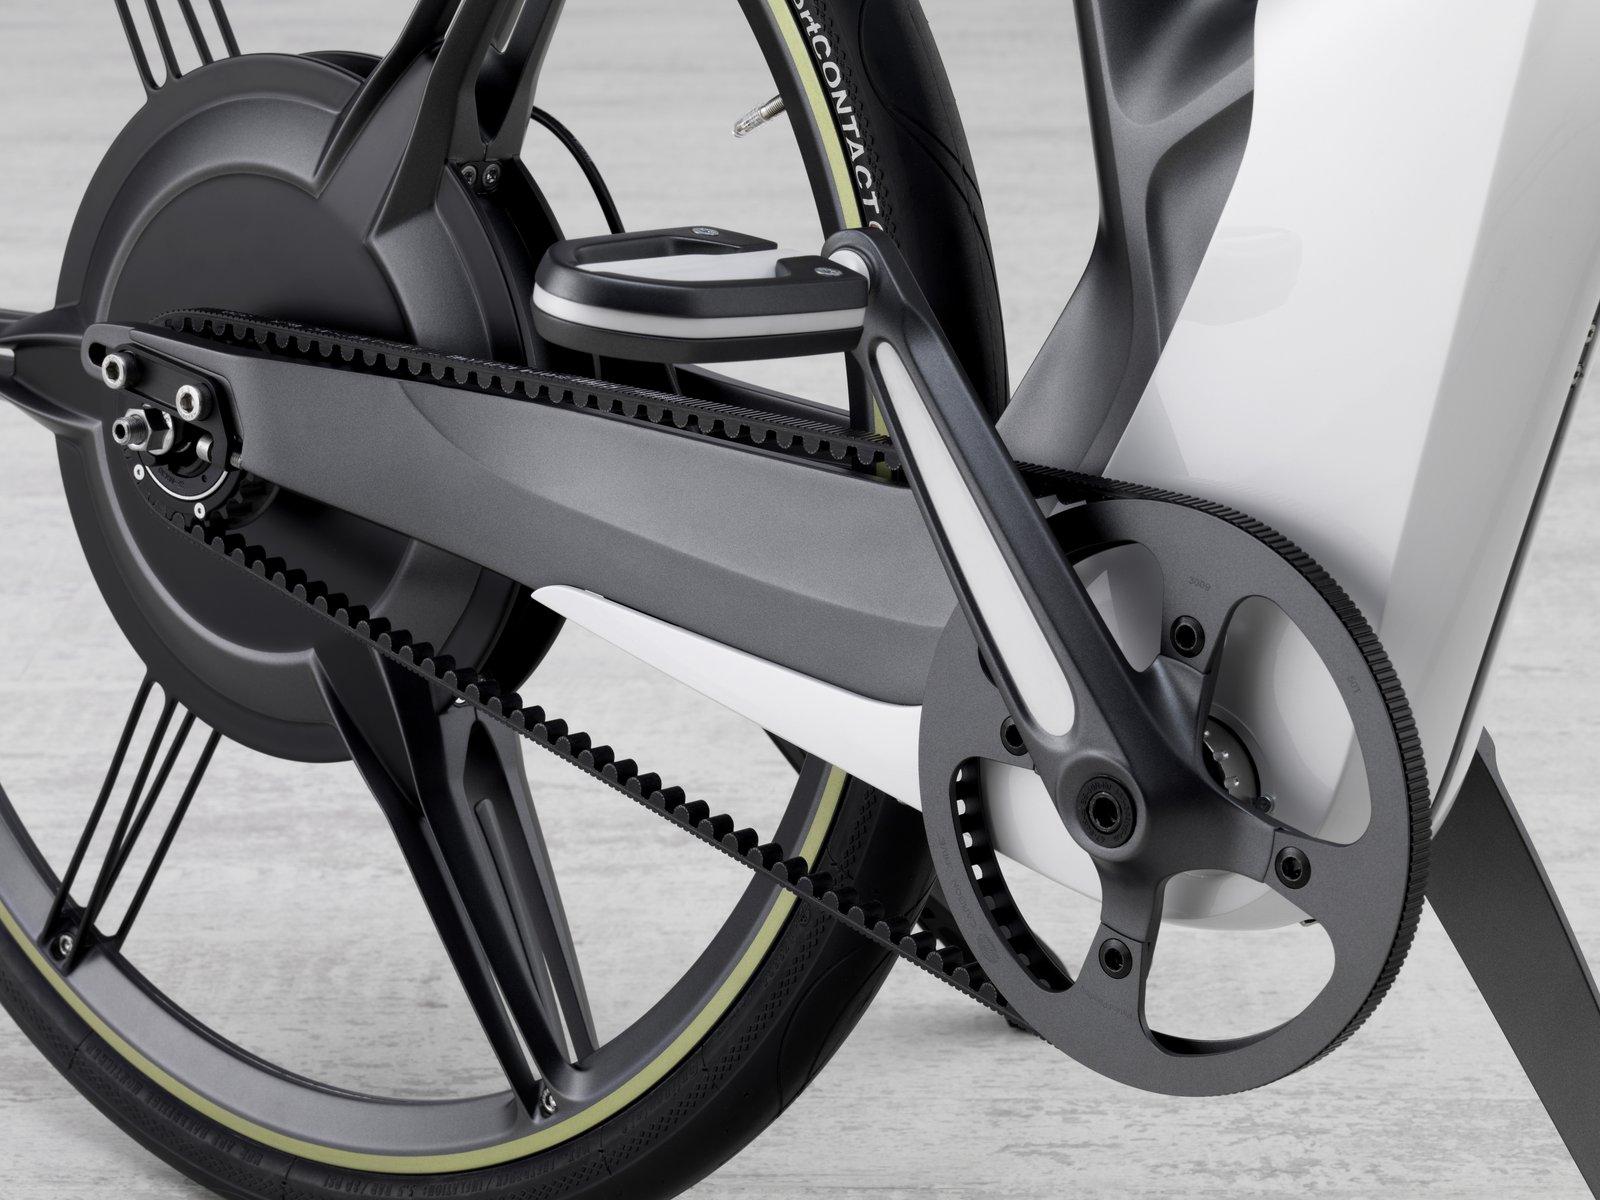 Otomobil üreticisi Smart, elektrik motorlu bisiklet hazırlıyor